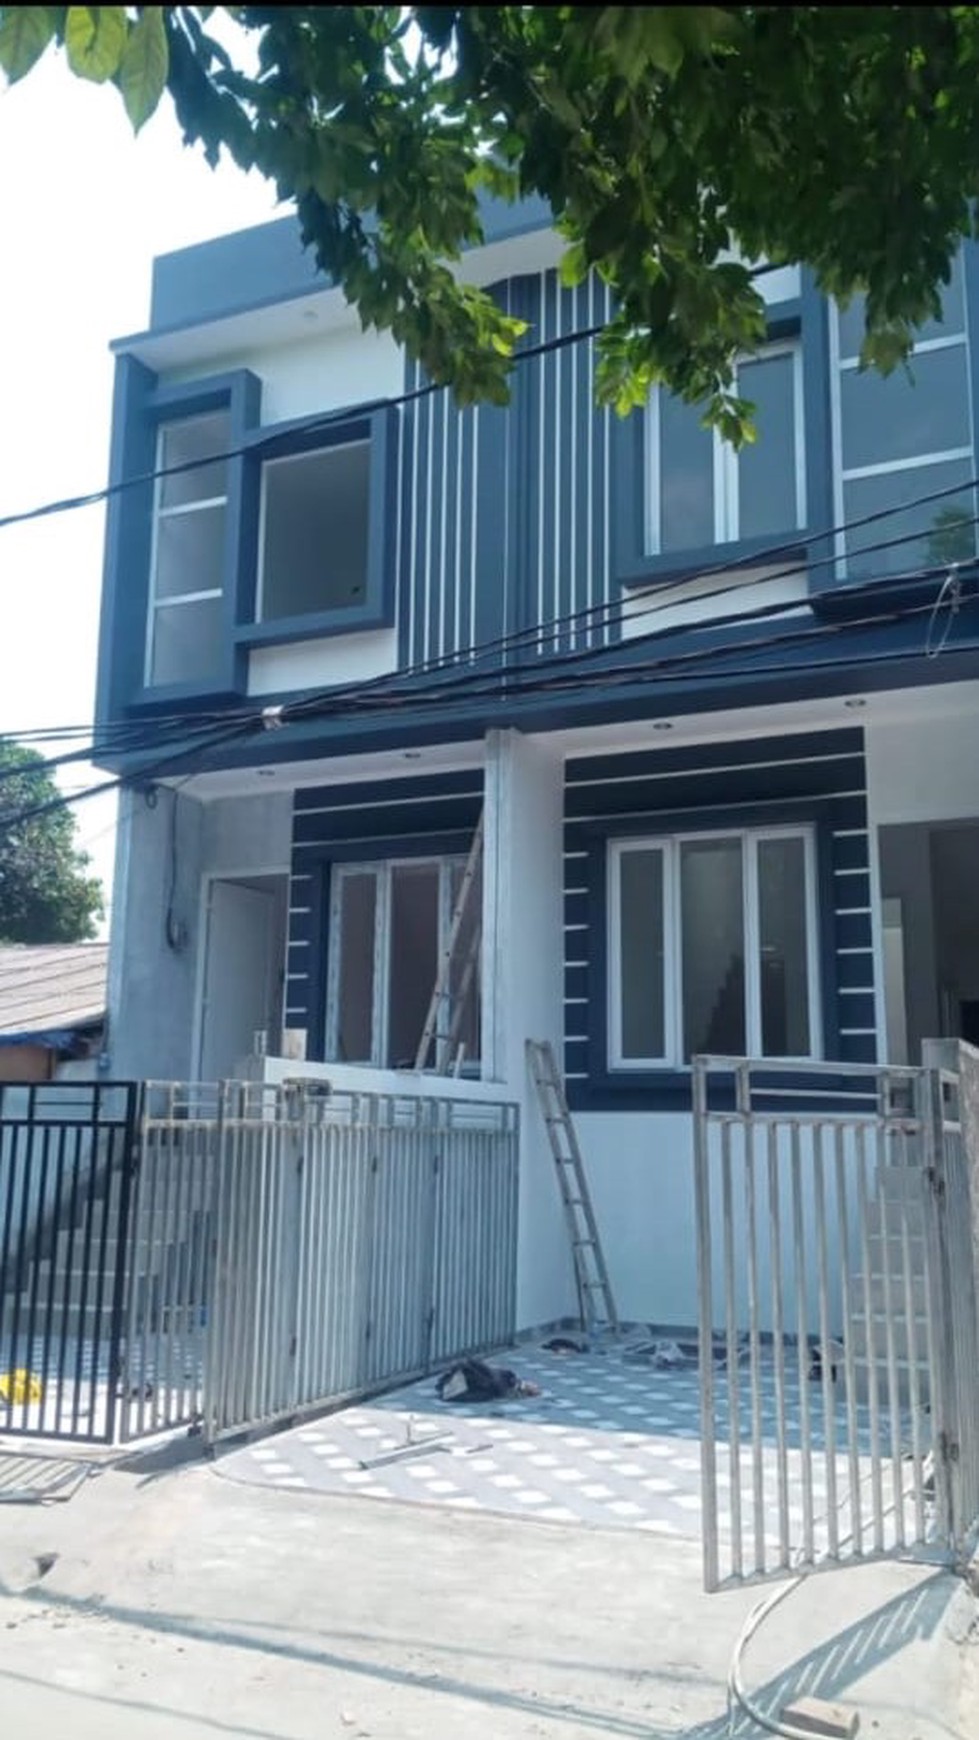 Dijual 2 unit Rumah Tinggal 2 lantai baru di kompleks Bea Cukai Sukapura kelapa Gading Jakarta Utara